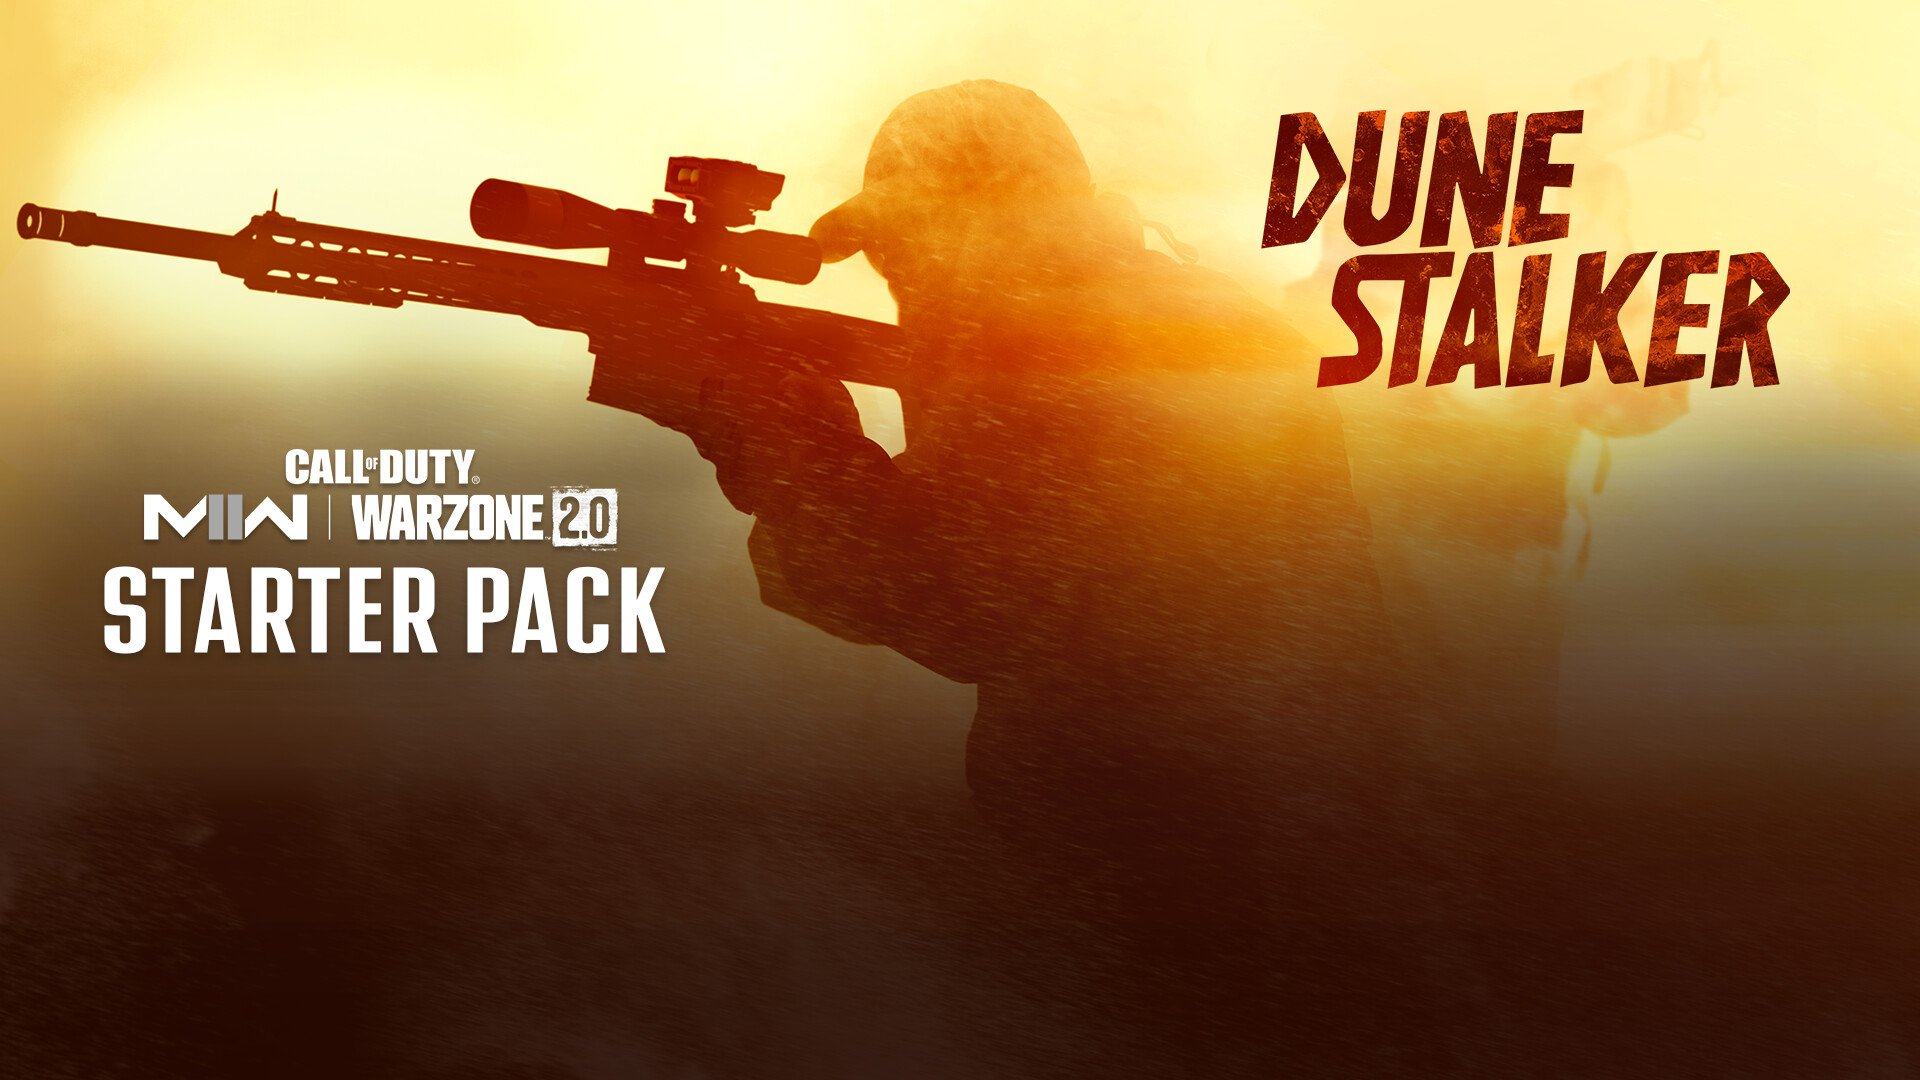 Call of Duty: Modern Warfare II - Dune Stalker: Starter Pack DLC Steam Altergift, 13.93$